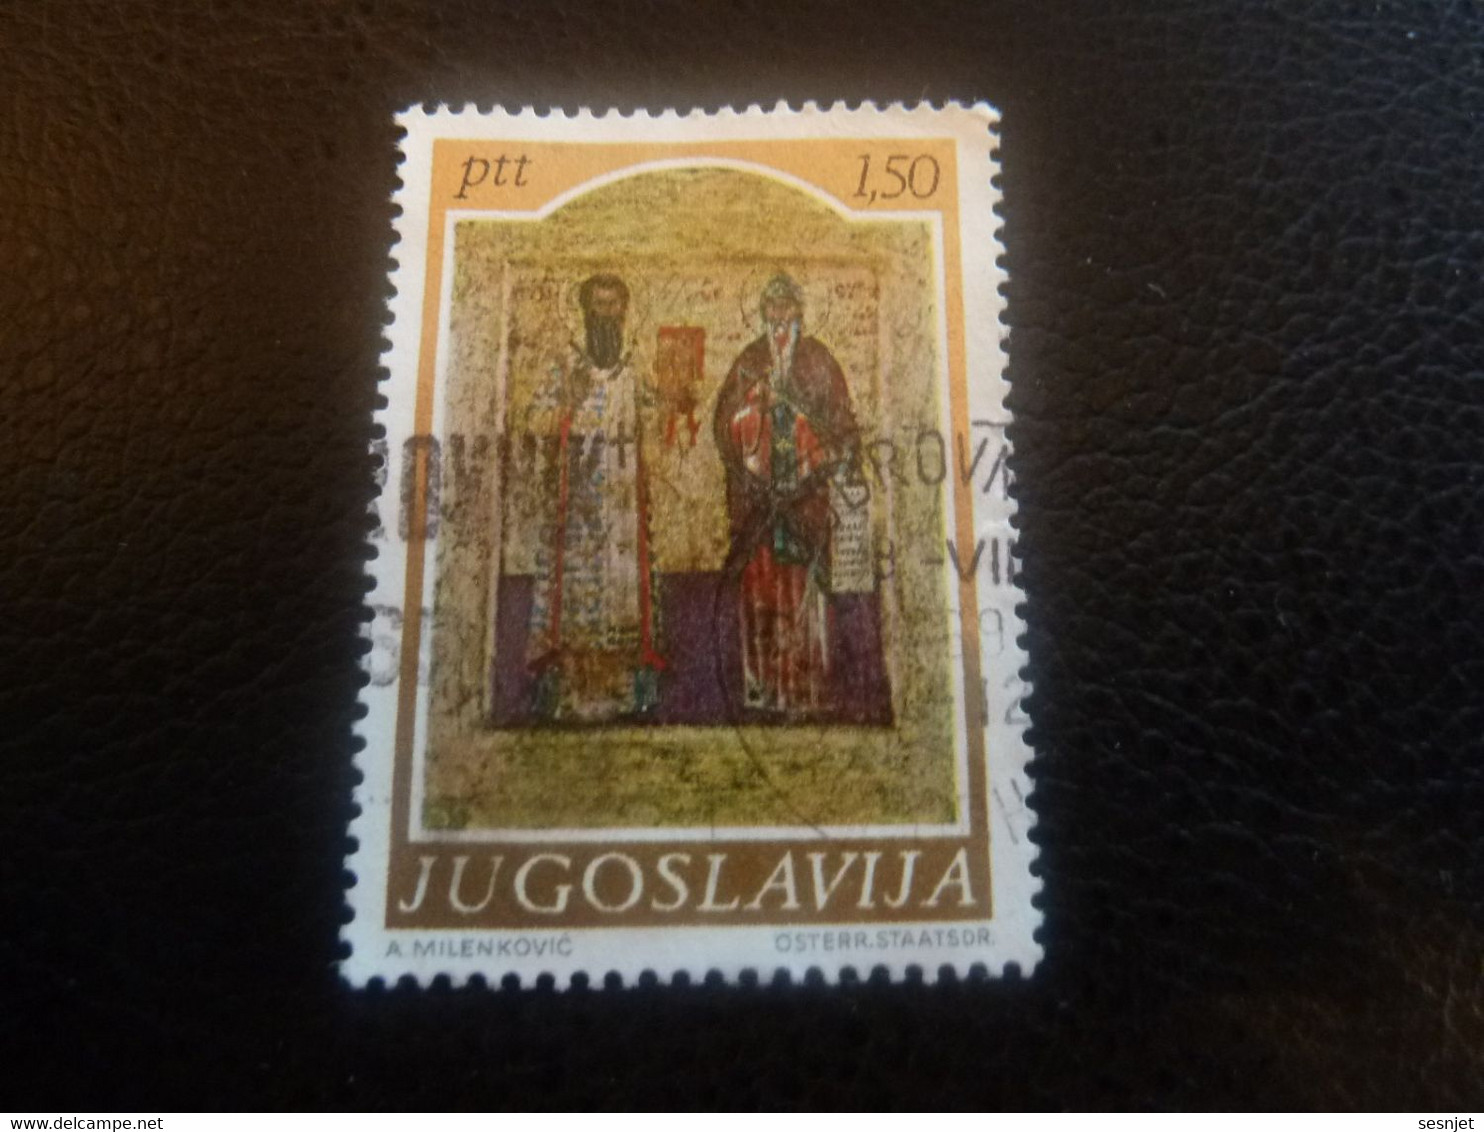 Ptt - Jugoslavija - Val 1.50 - Multicolore - Oblitéré - - Used Stamps